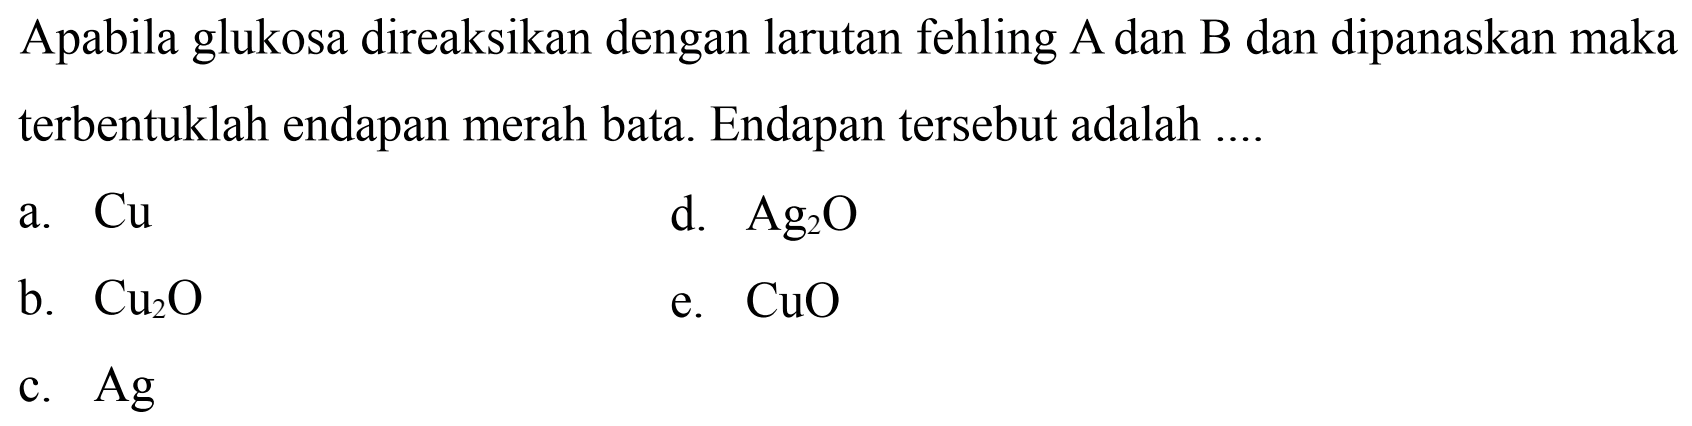 Apabila glukosa direaksikan dengan larutan fehling A dan B dan dipanaskan maka terbentuklah endapan merah bata. Endapan tersebut adalah ....
a.  Cu 
d.  Ag_(2) O 
b.  Cu_(2) O 
e.  CuO 
c.  Ag 